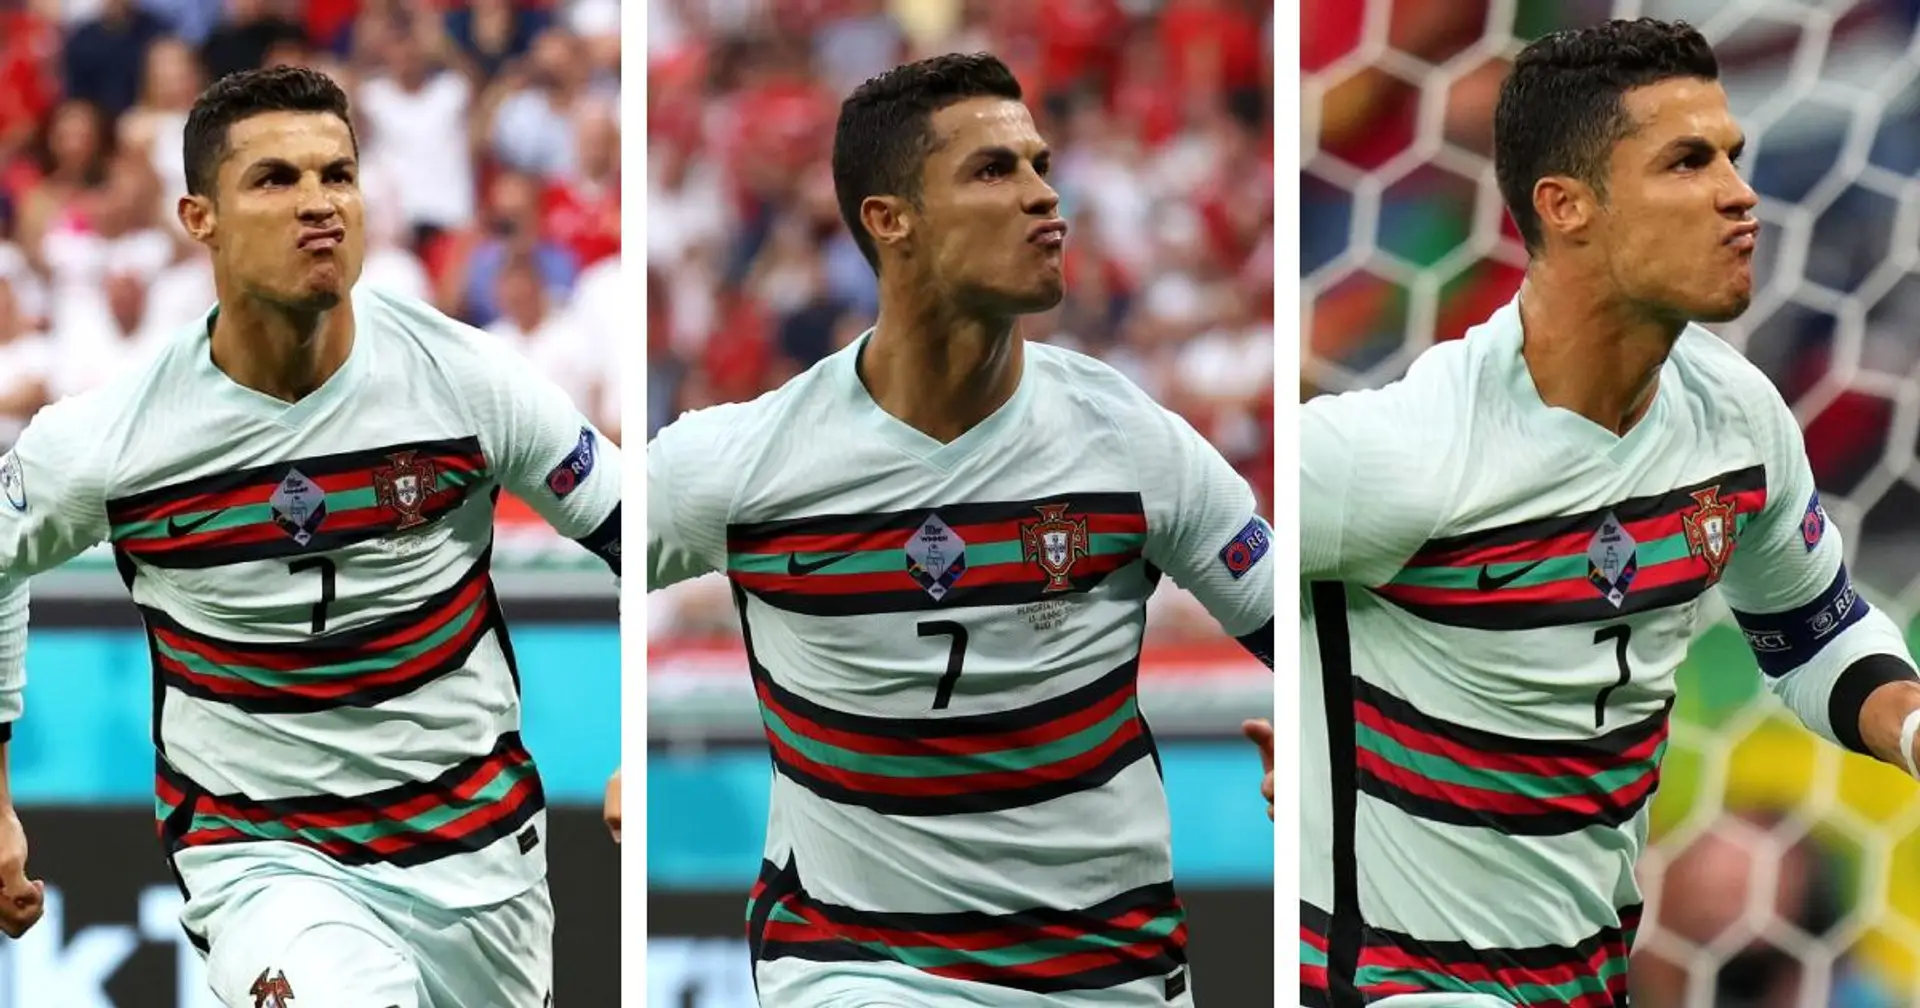 "Je détesterais être quelqu'un qui n'aime pas Cristiano": les fans de foot réagissent au record de Cristiano à l'Euro